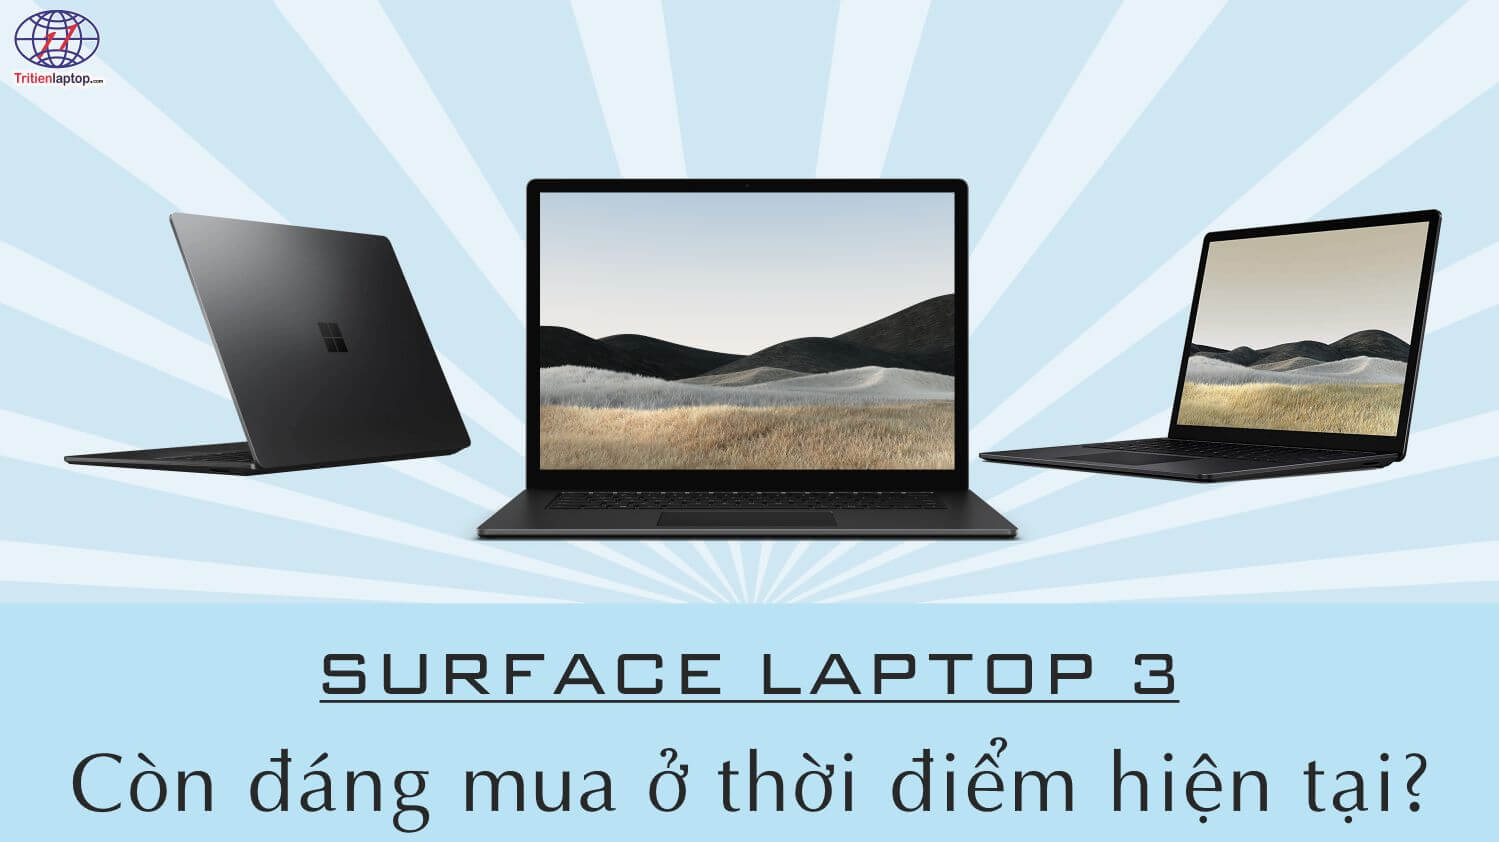 Có nên mua Surface Laptop 3 ở thời điểm hiện tại?